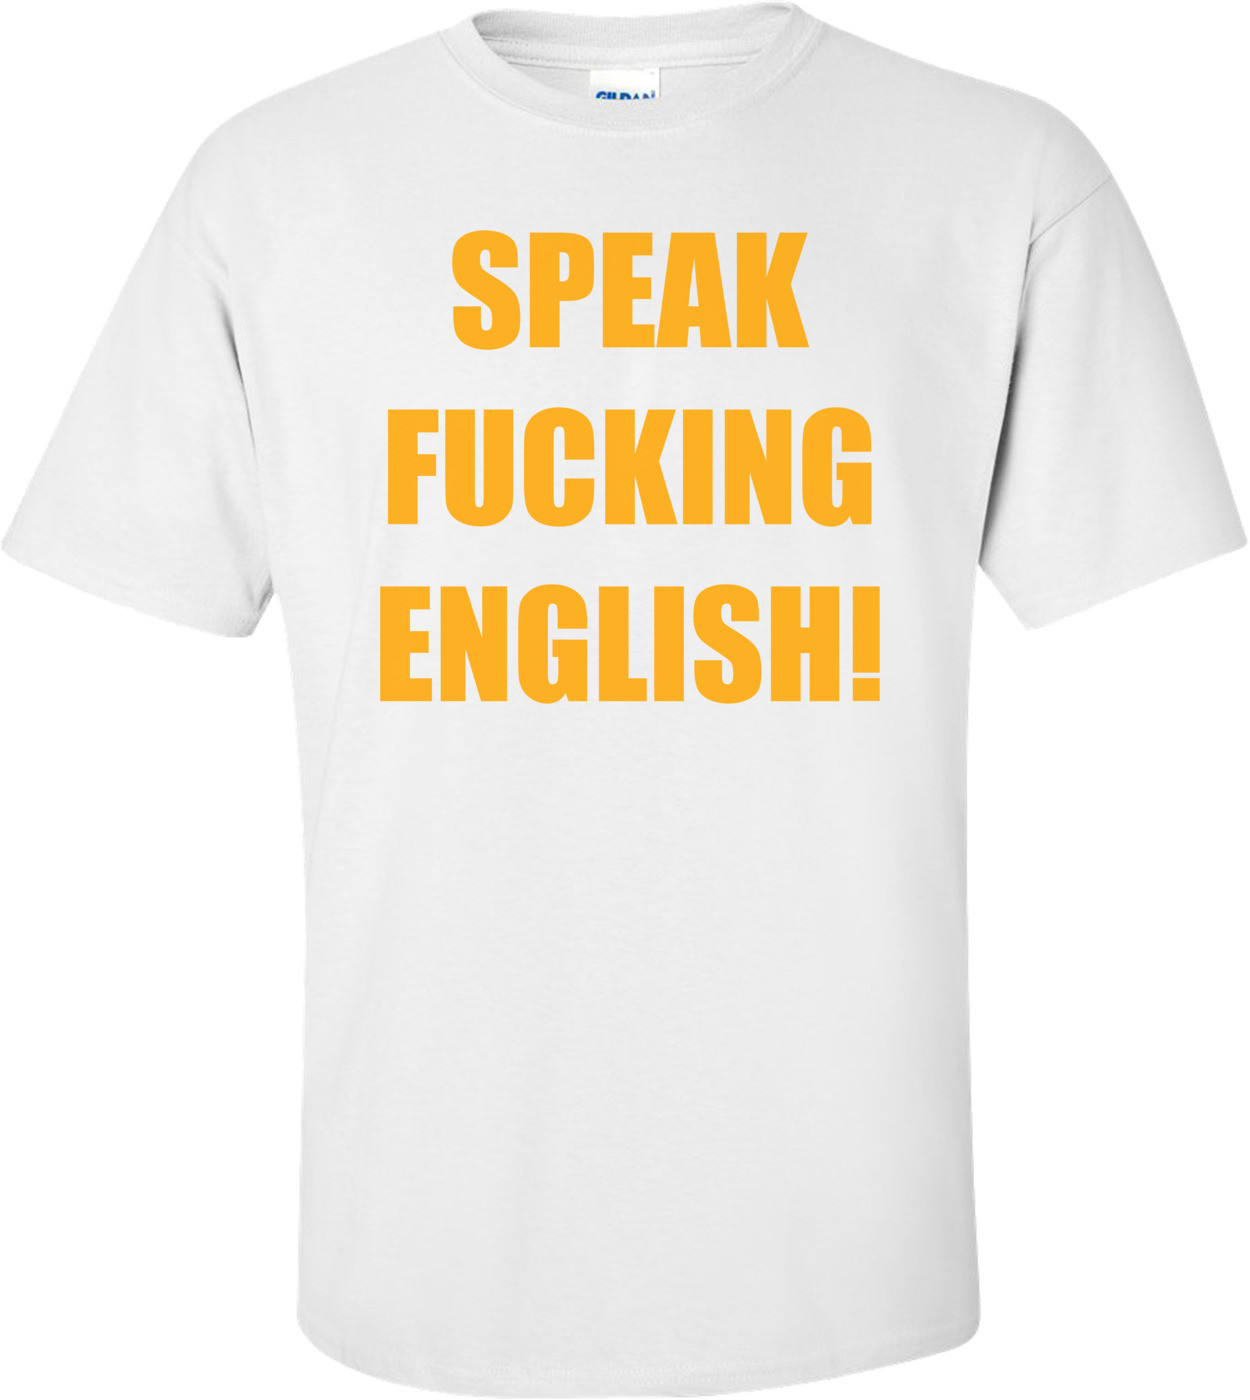 SPEAK FUCKING ENGLISH!